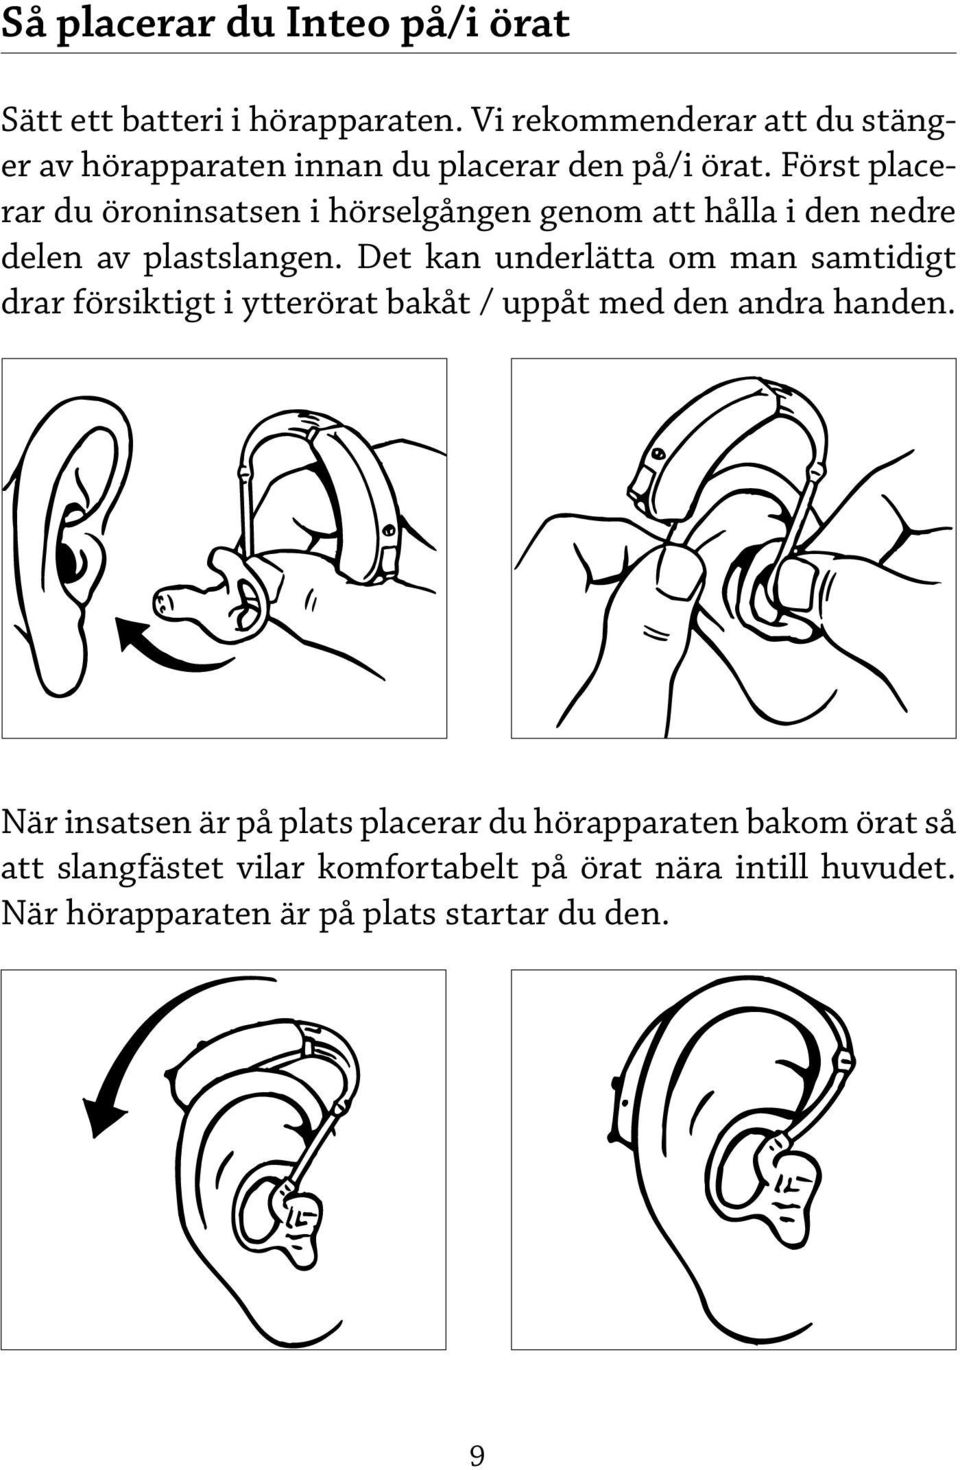 Först placerar du öroninsatsen i hörselgången genom att hålla i den nedre delen av plastslangen.